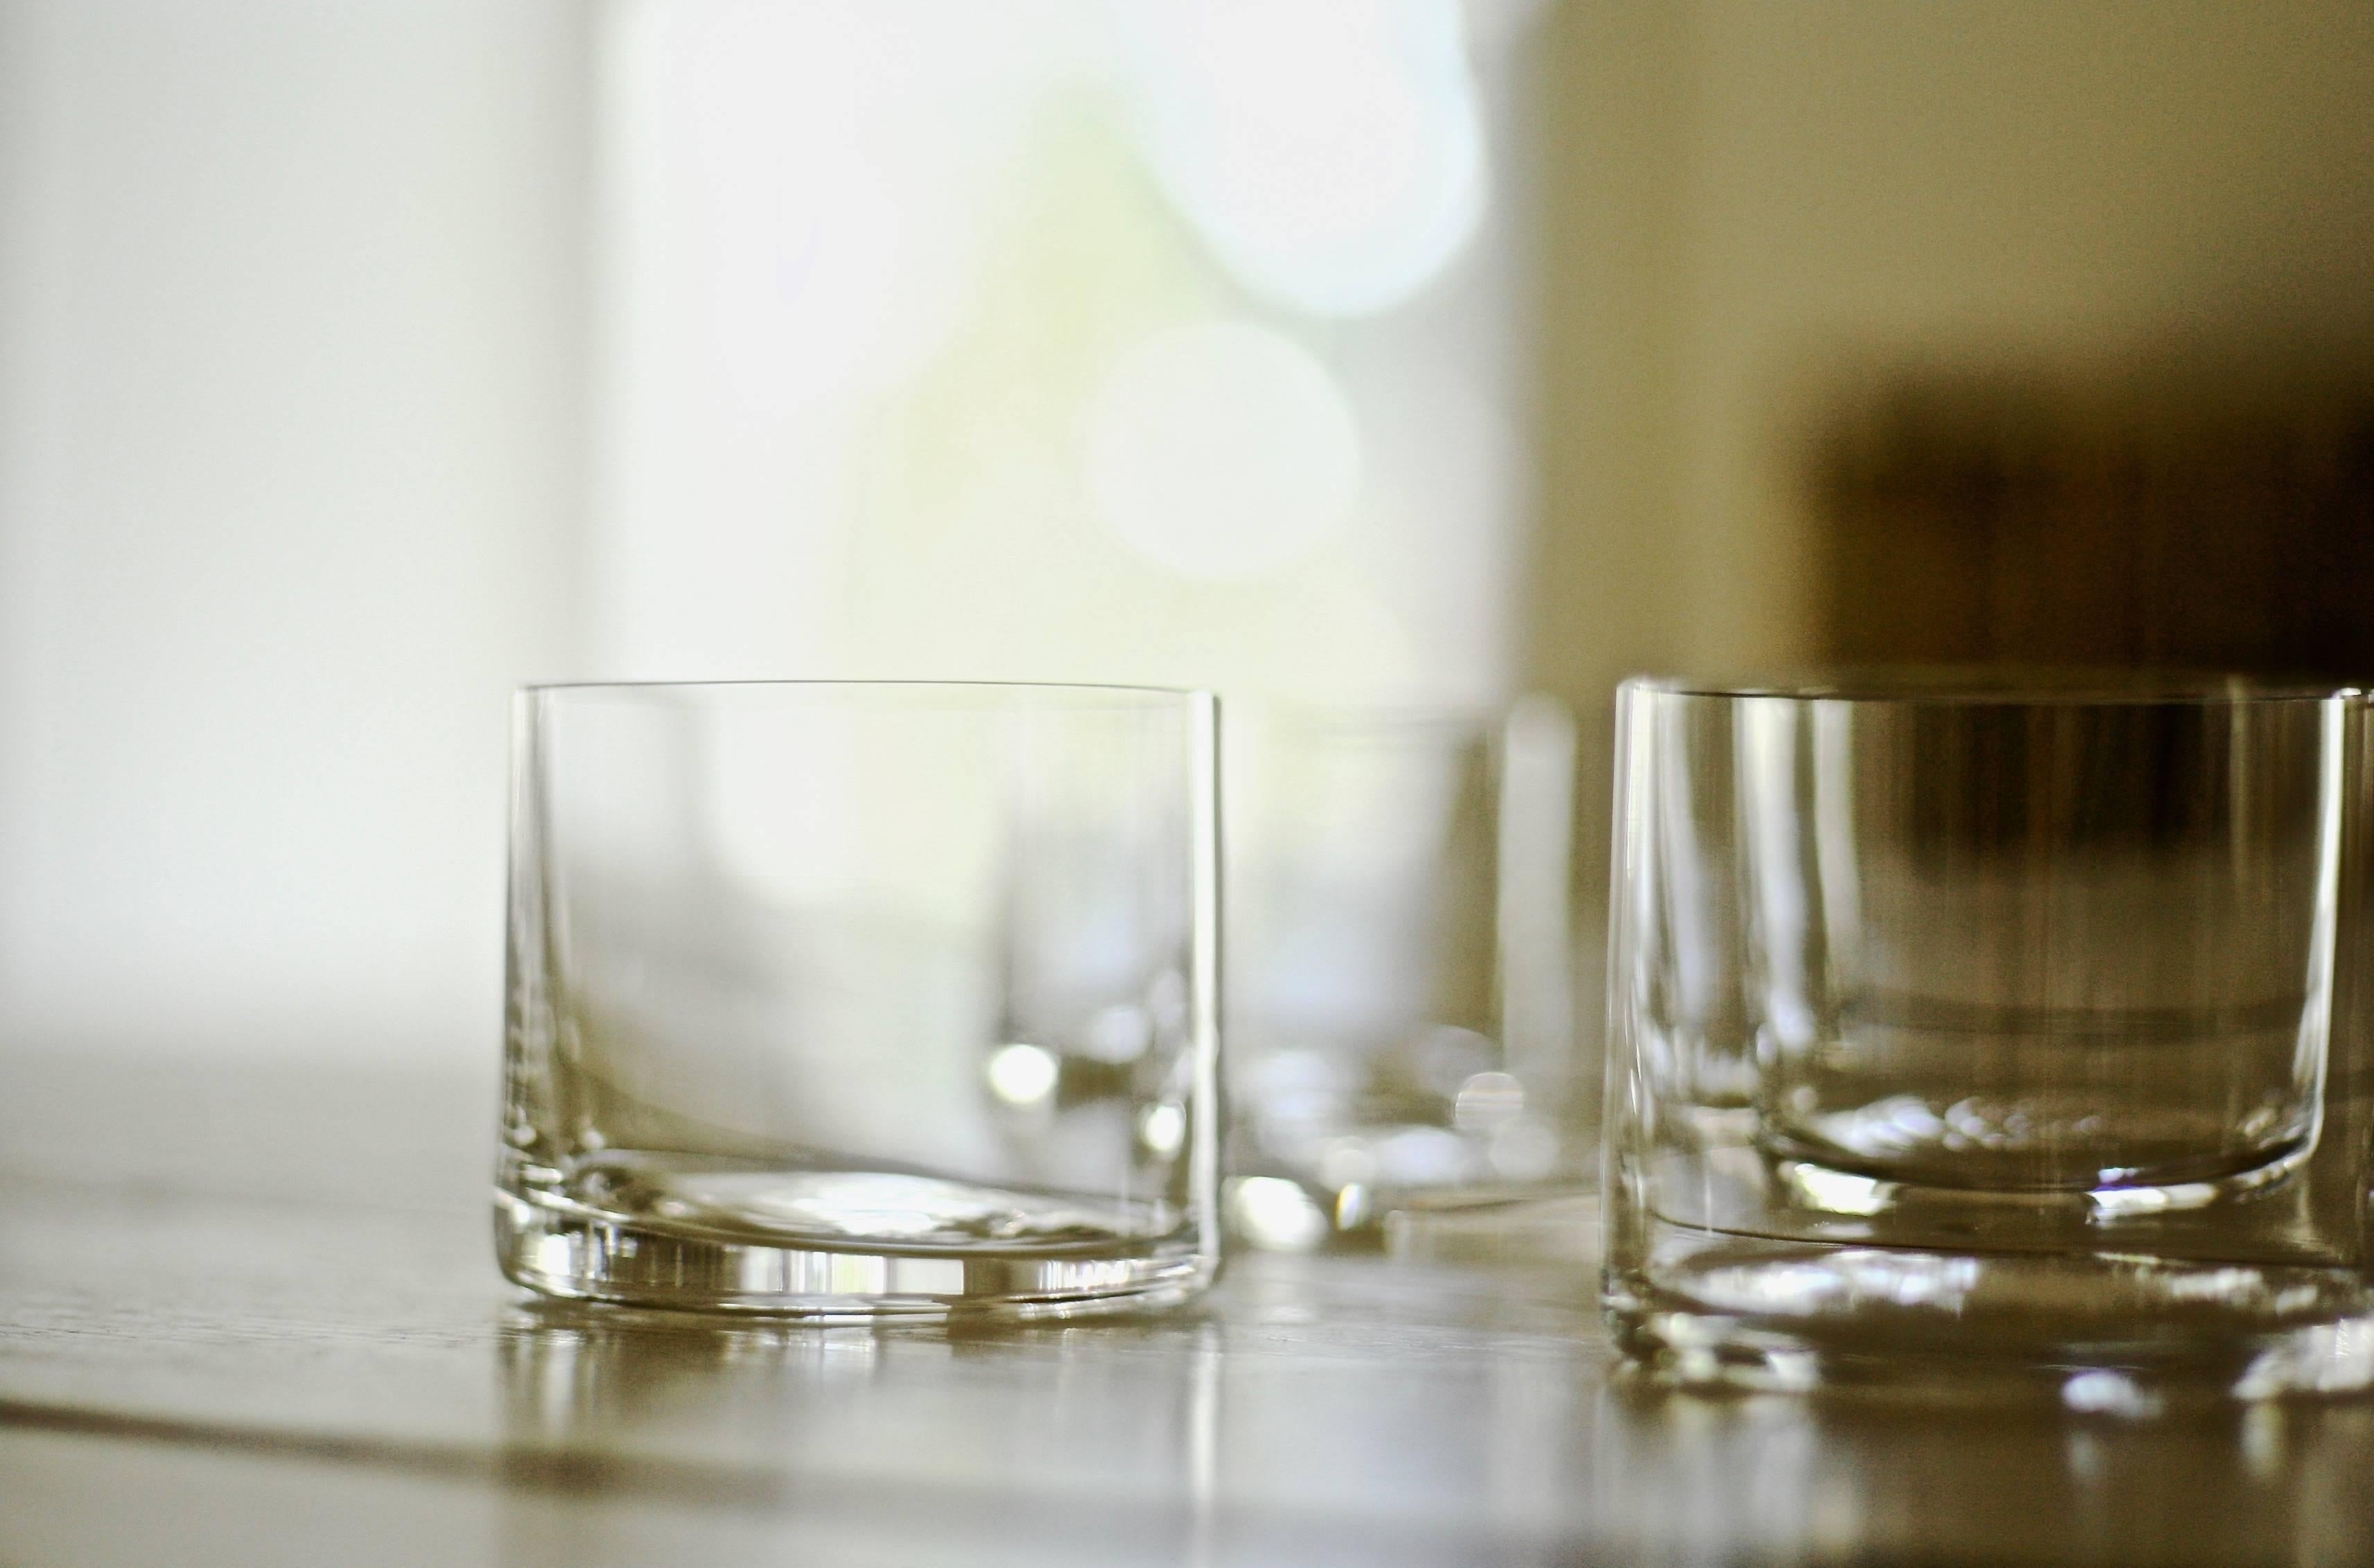 Lancés avec Takashimaya en 1999, ces verres à pied en cristal soufflé à la main sont devenus un classique moderne. Chaque pièce de Deborah Ehrlich est conçue pour la force et la clarté extraordinaires du cristal suédois. La simplicité du design, la